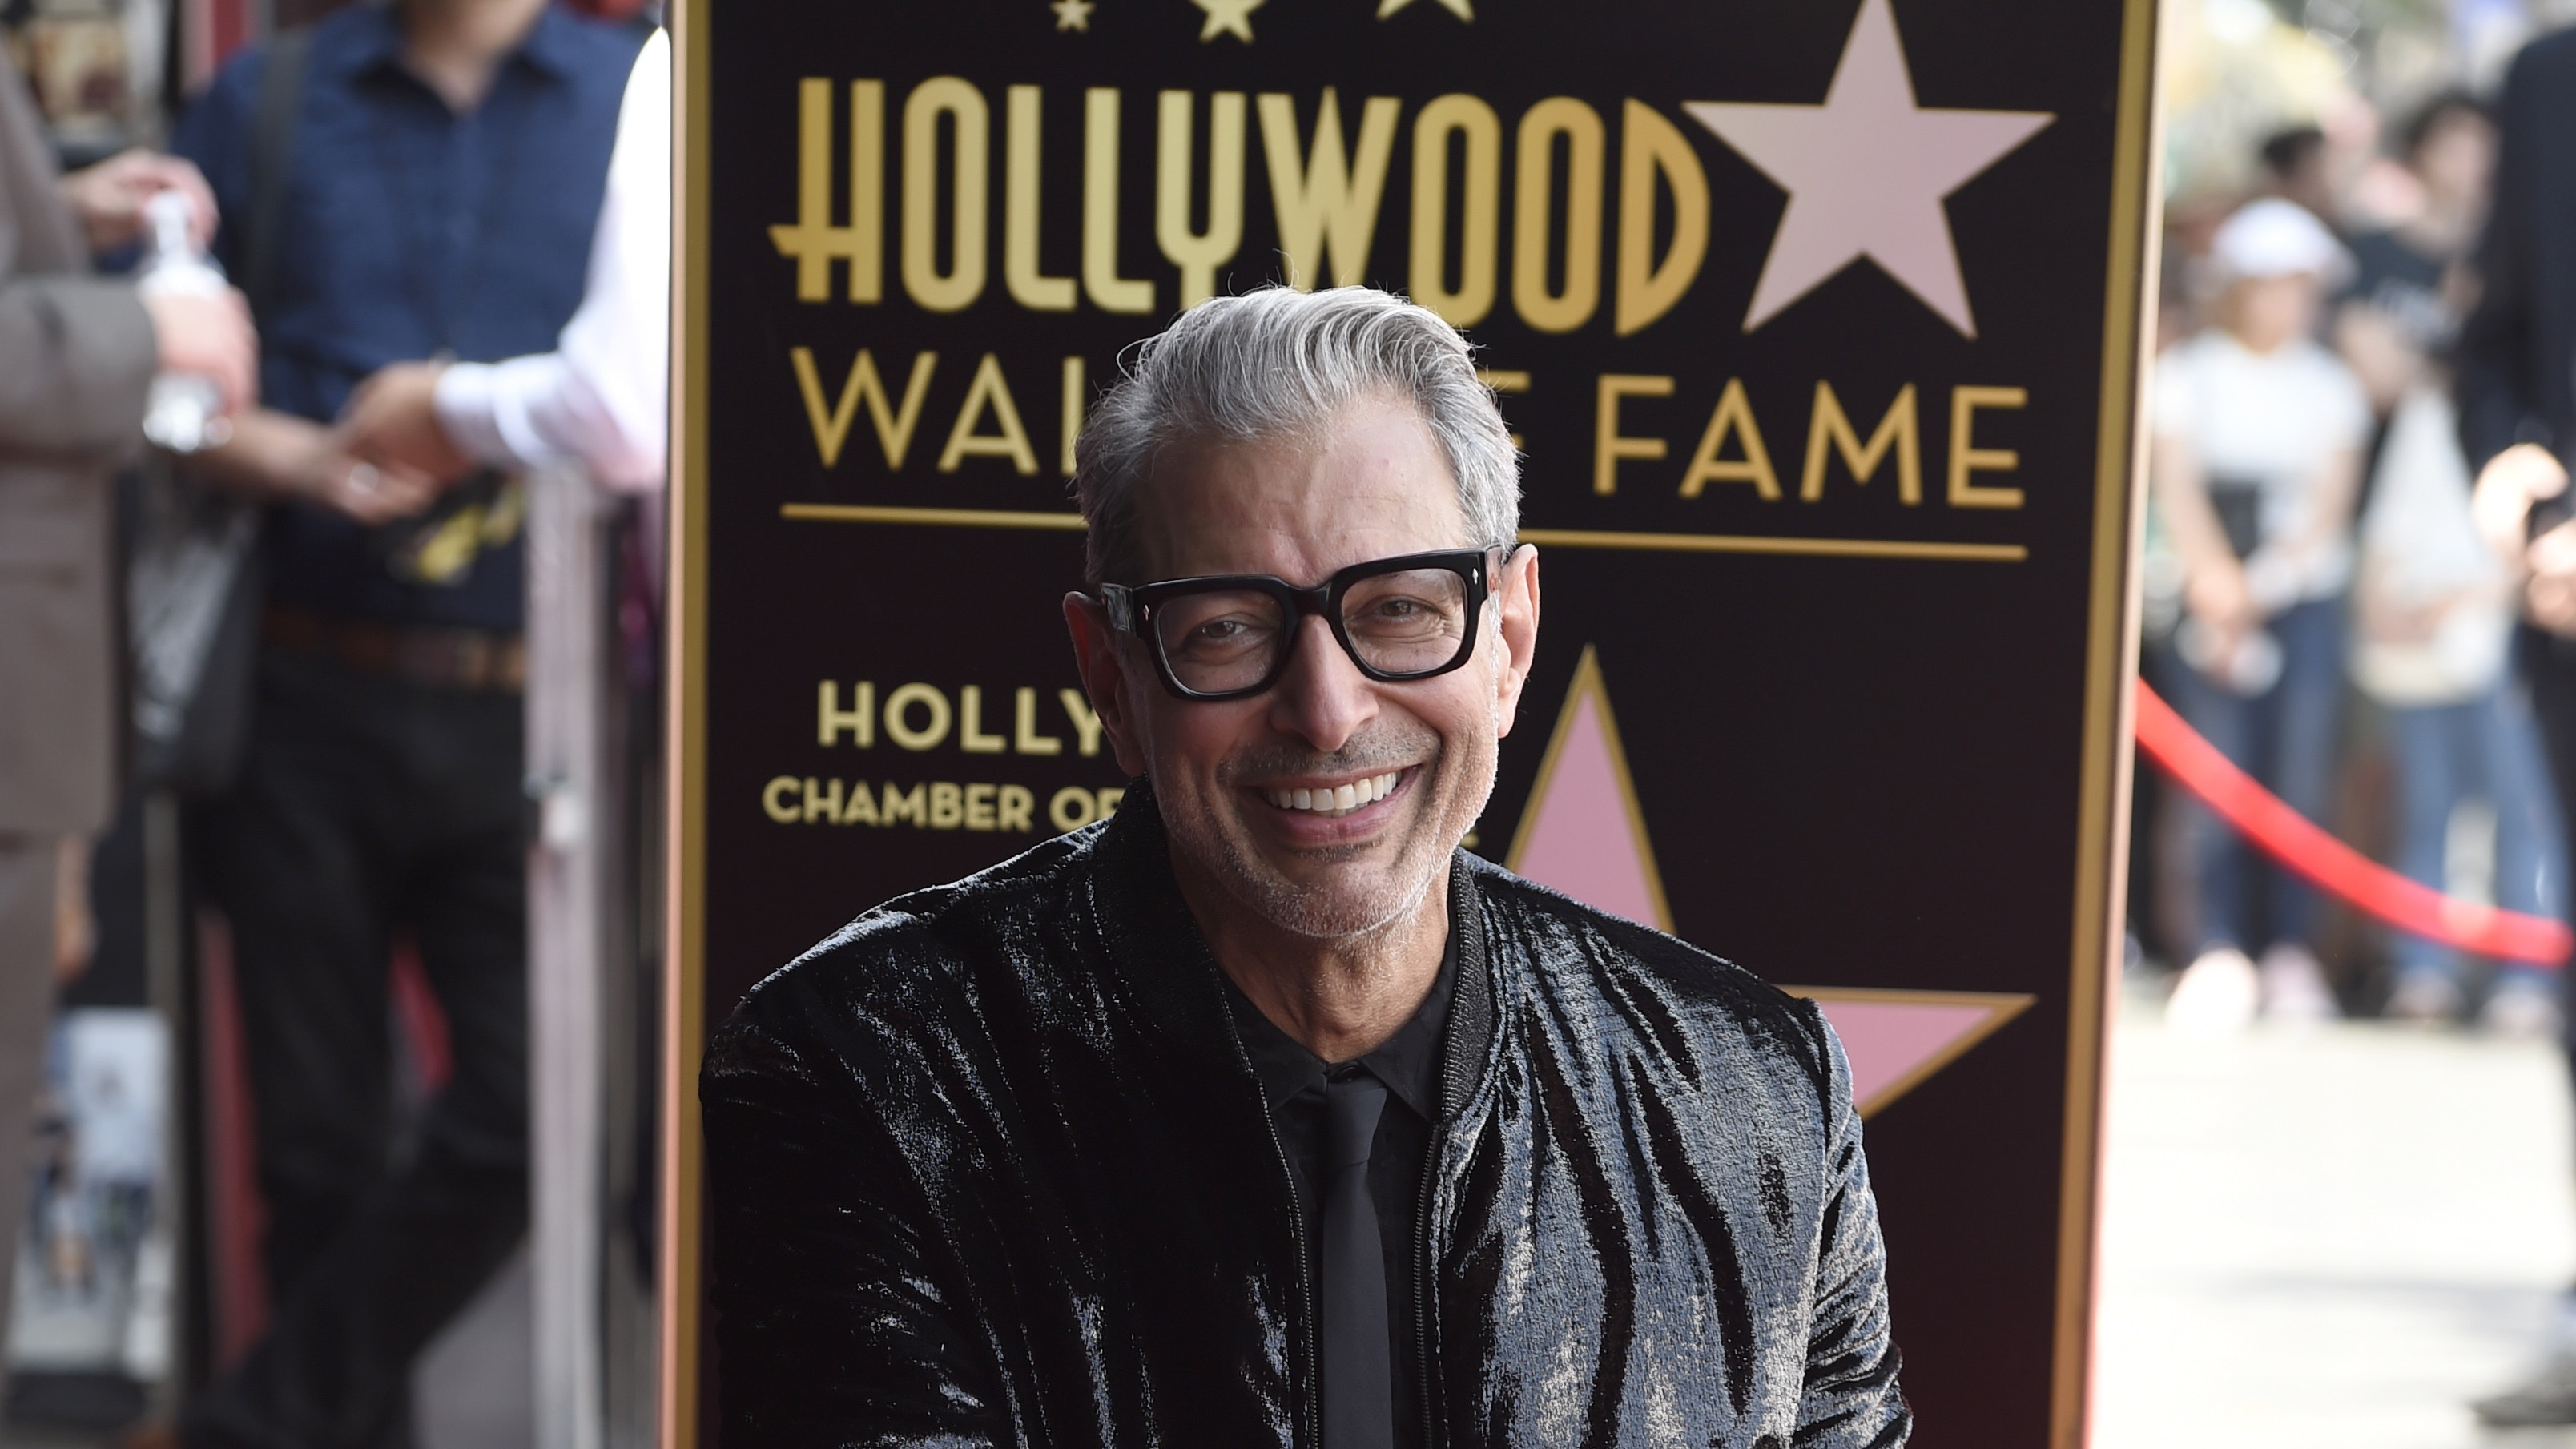 Jeff Goldblum honoré d'une étoile à Hollywood - CinéSérie